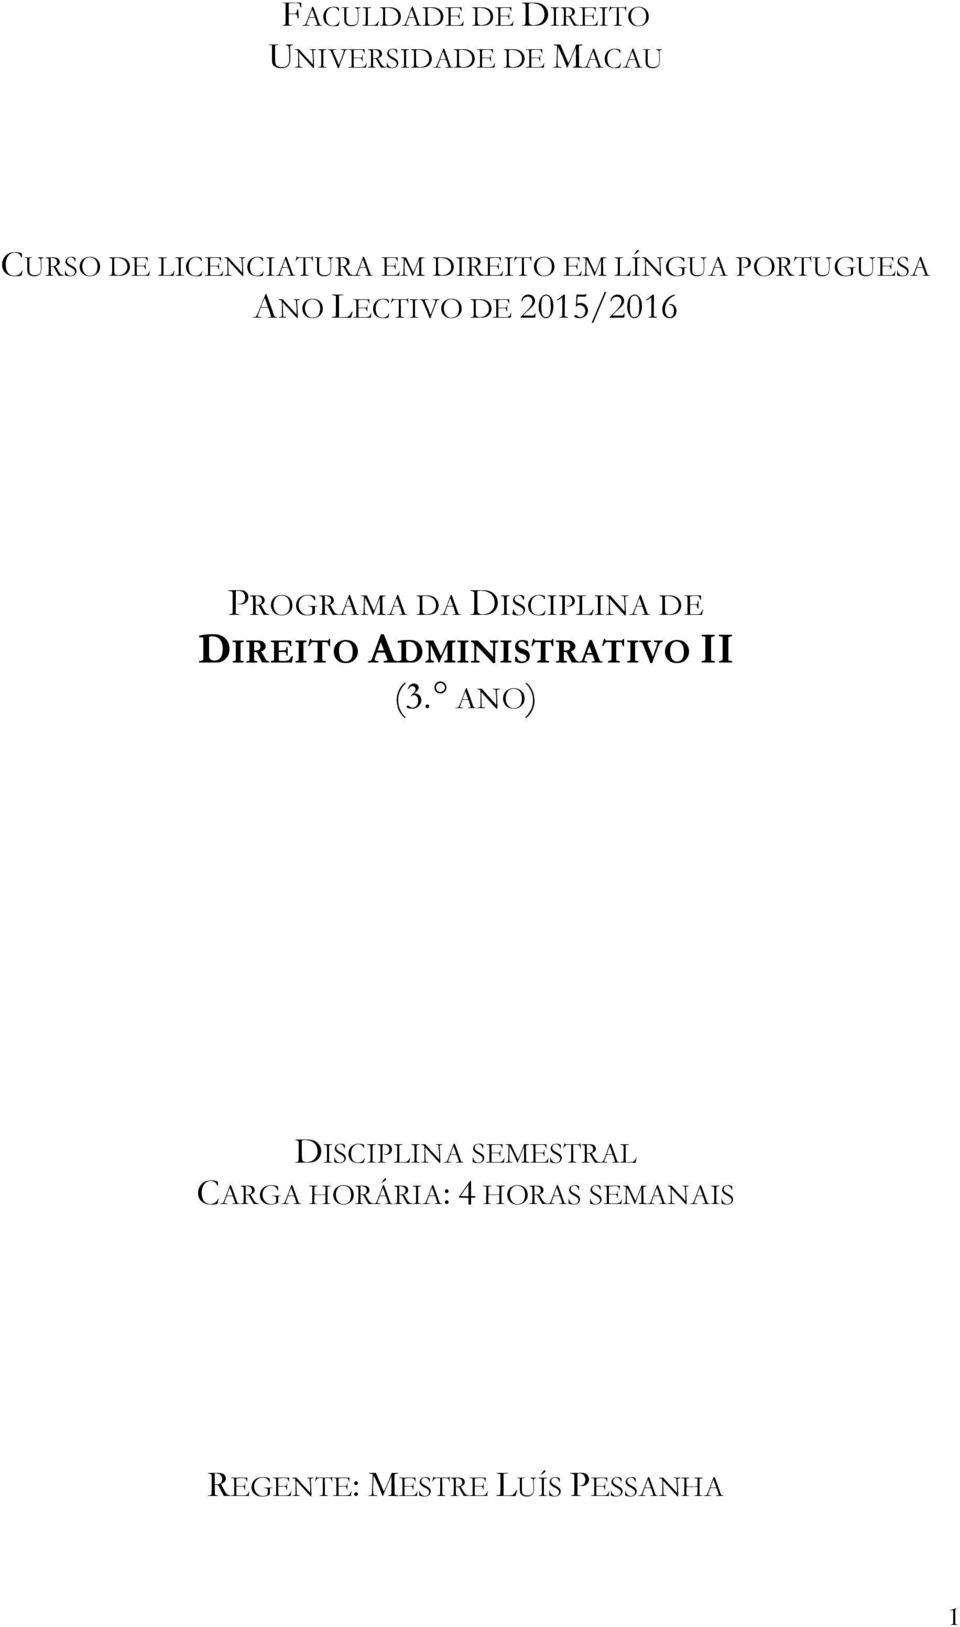 DA DISCIPLINA DE DIREITO ADMINISTRATIVO II (3.